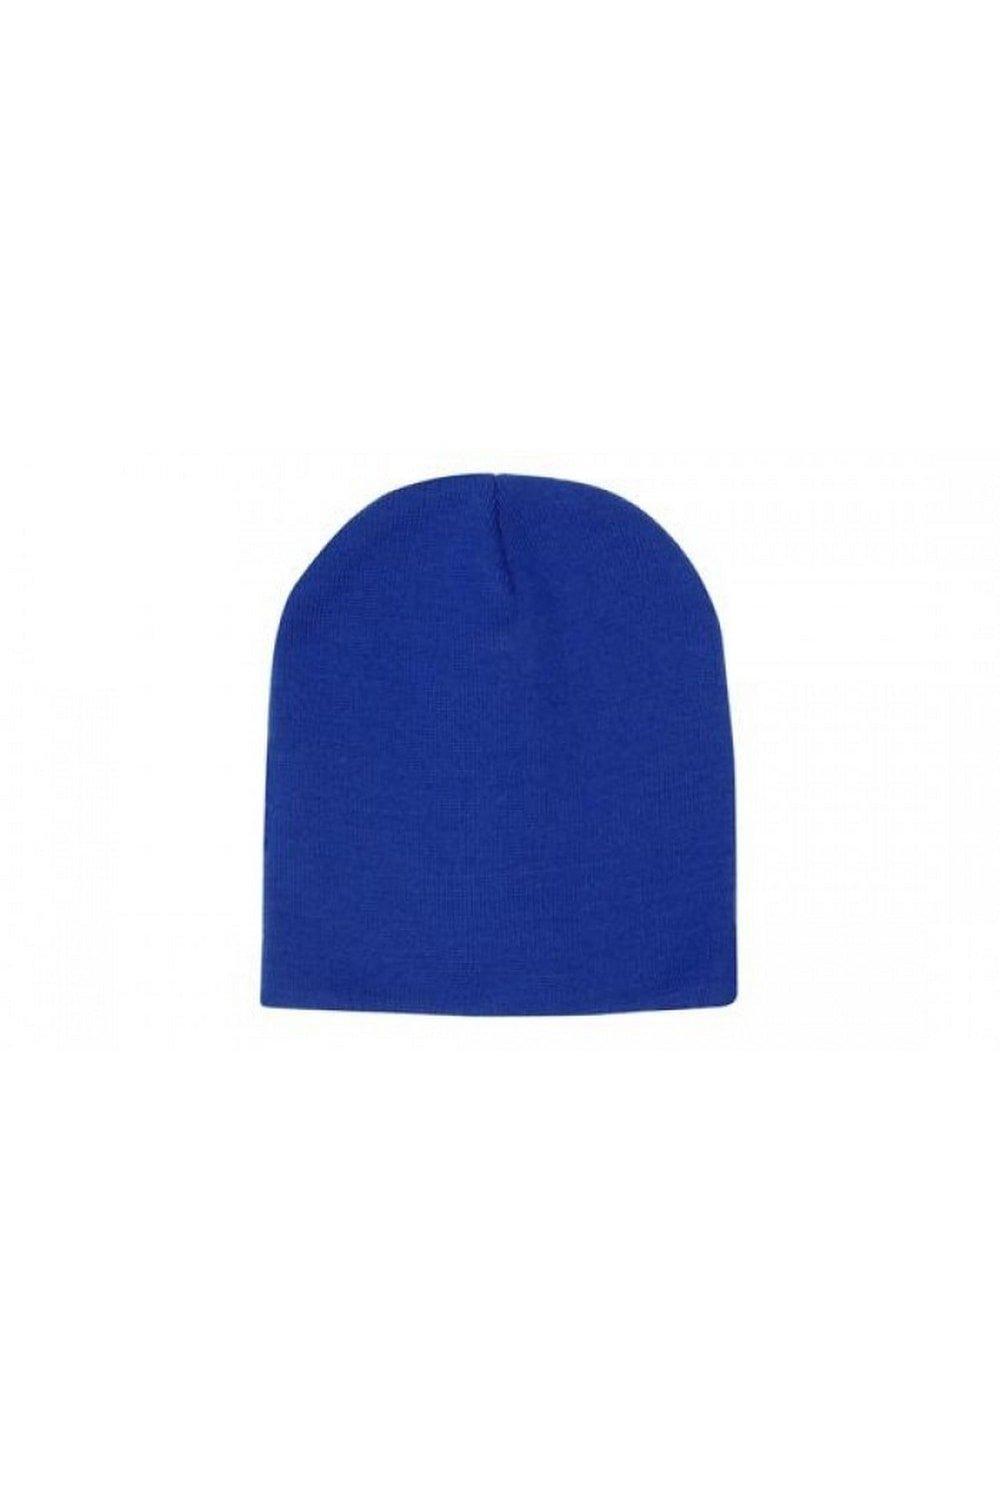 Обычная шапка Carta Sport, синий